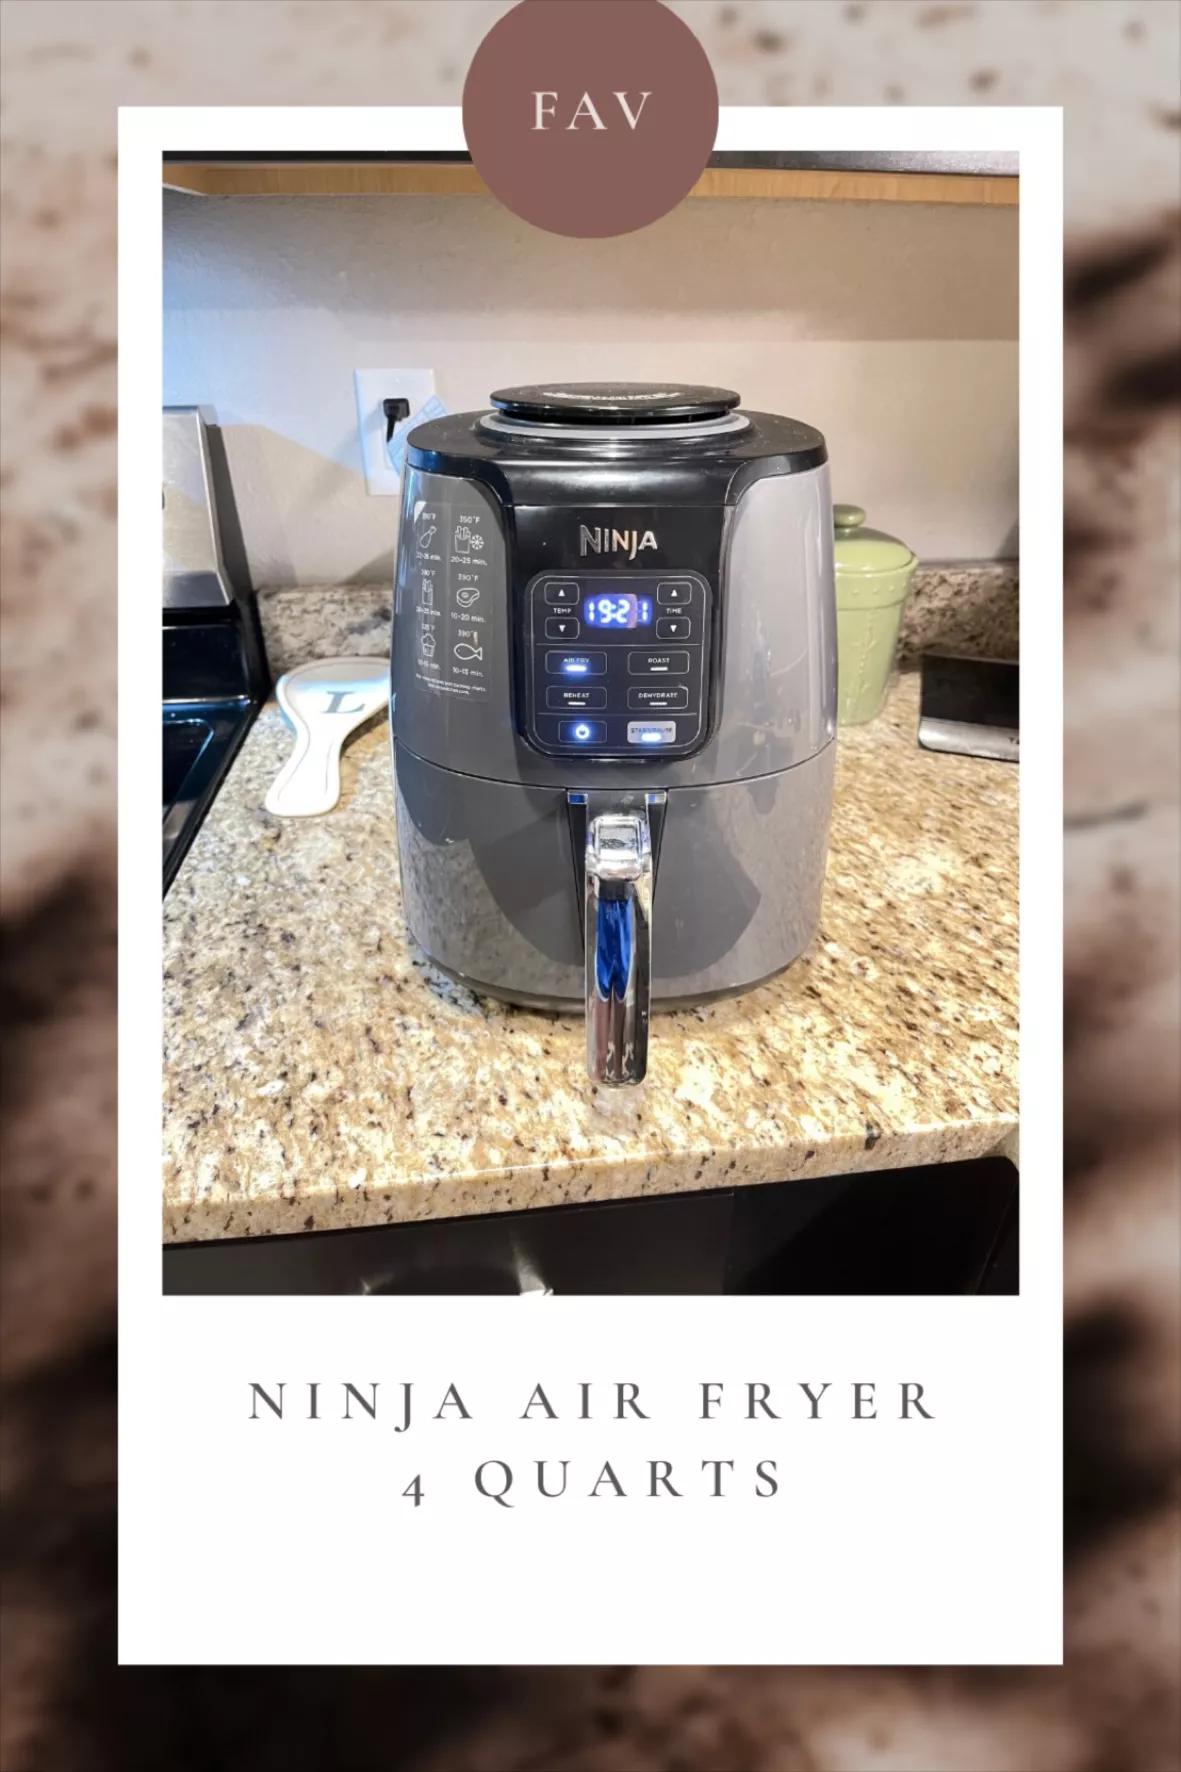  Ninja 4-Quart Air Fryer, AF100 : Home & Kitchen